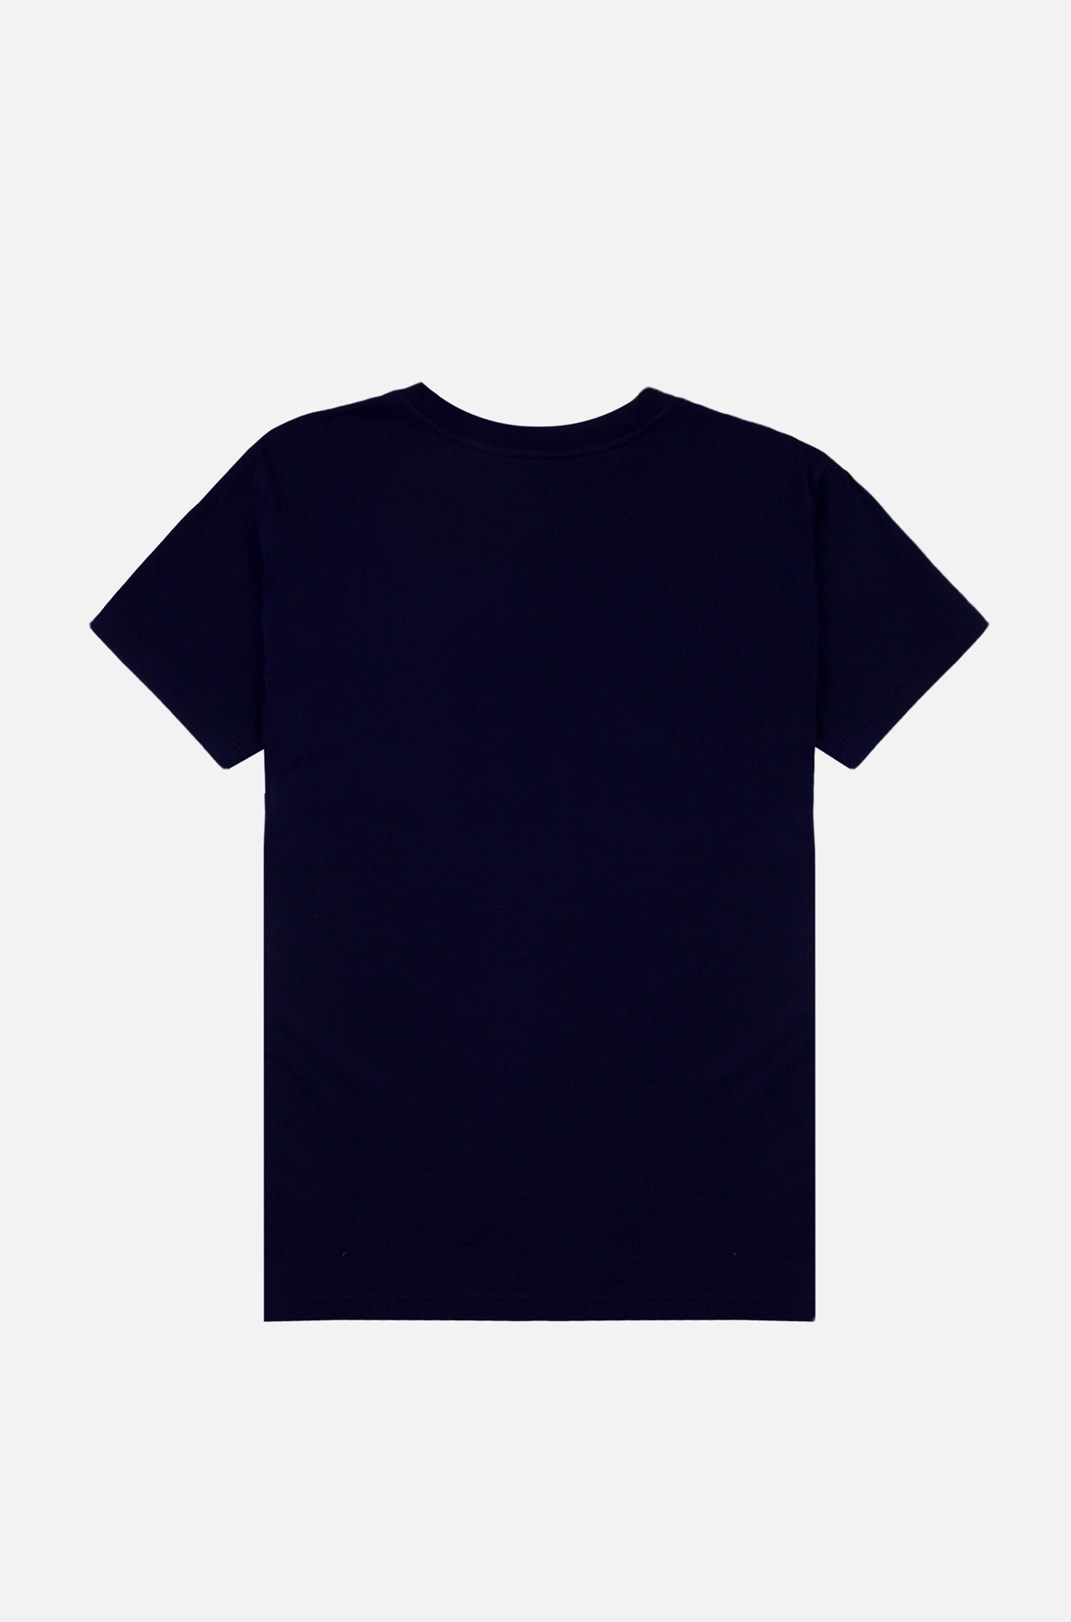 Camiseta Tradicional Approve A Azul Marinho